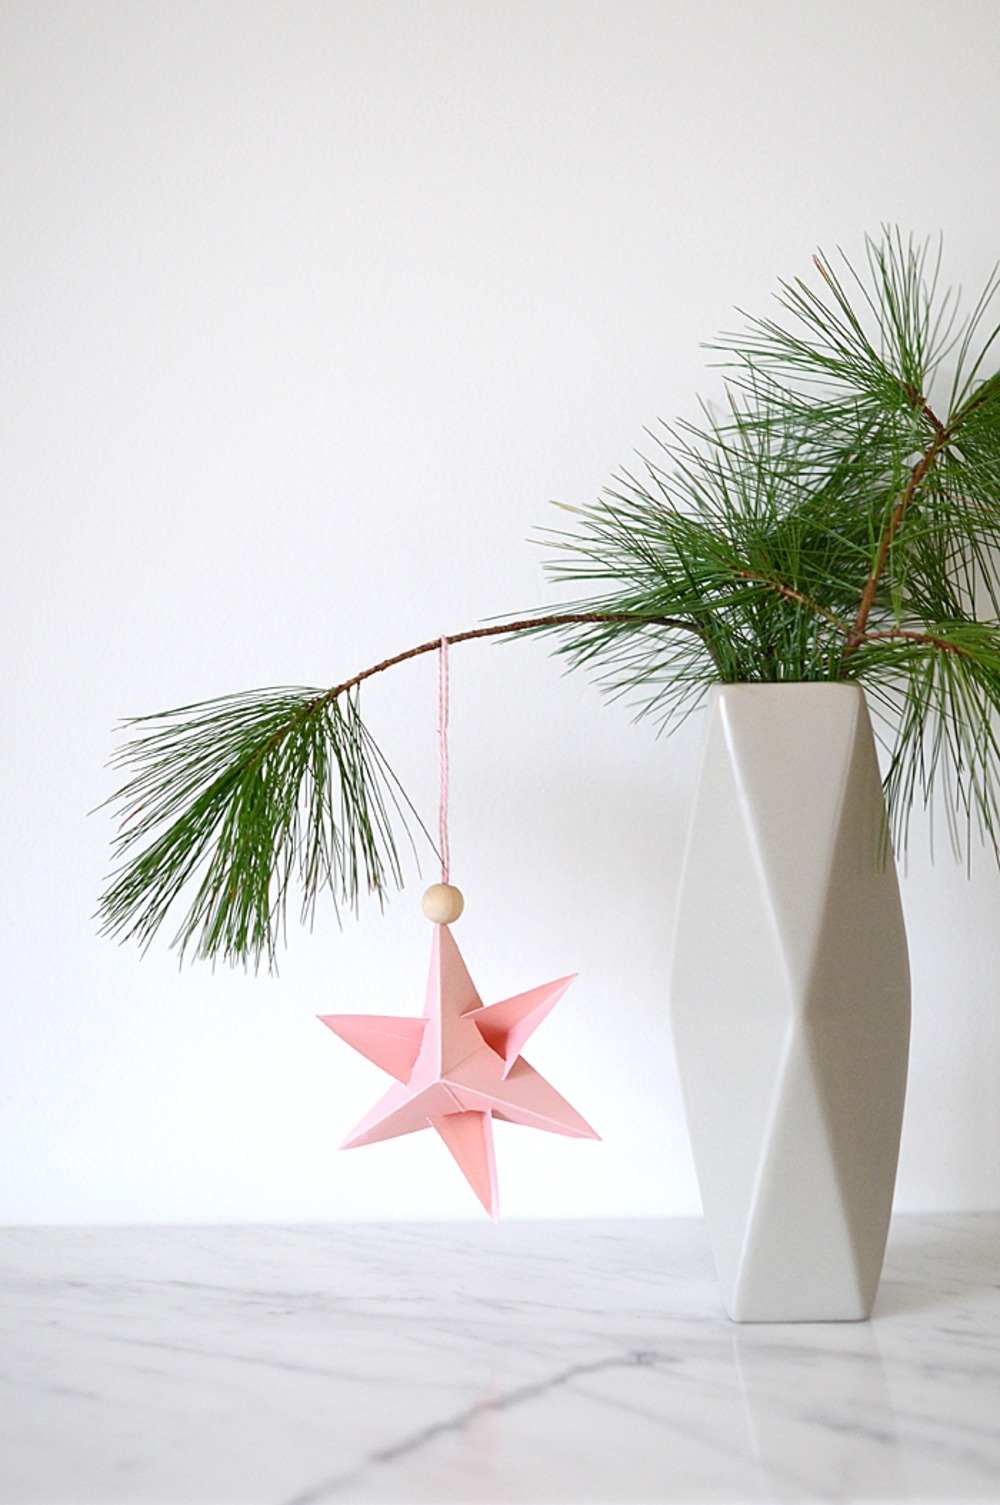 schön gestaltete weihnachtsdeko mit baumzweigen in vase dekoriert mit papierstern hängend mit holzperle